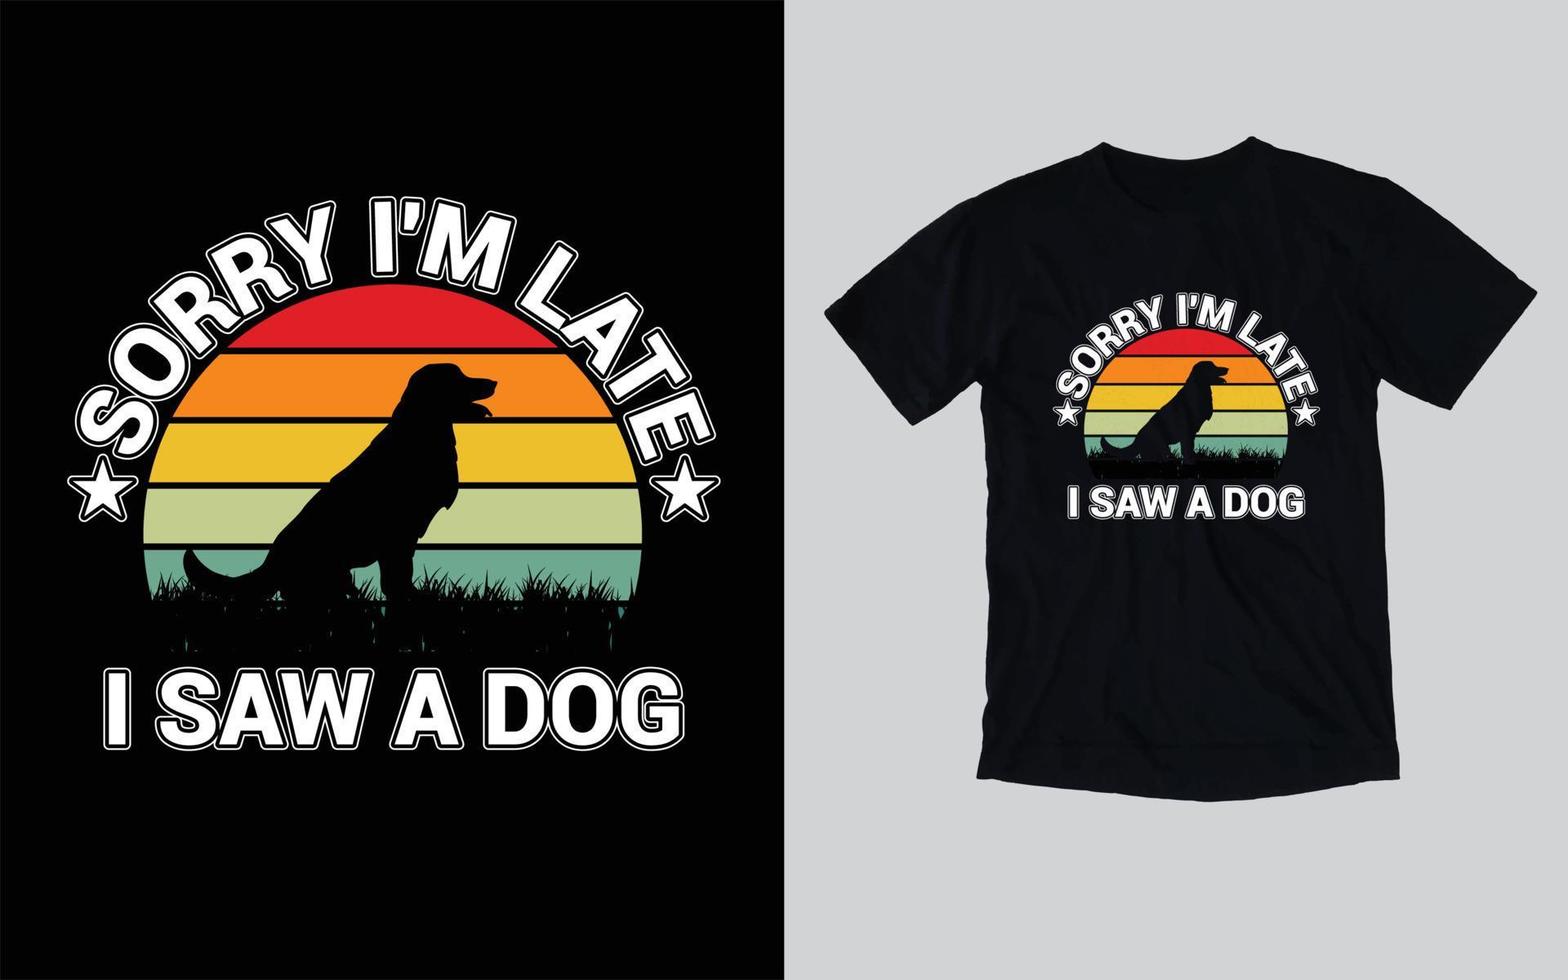 Typografie-Hunde-T-Shirt-Design, Hundeliebhaber-T-Shirt-Design vektor